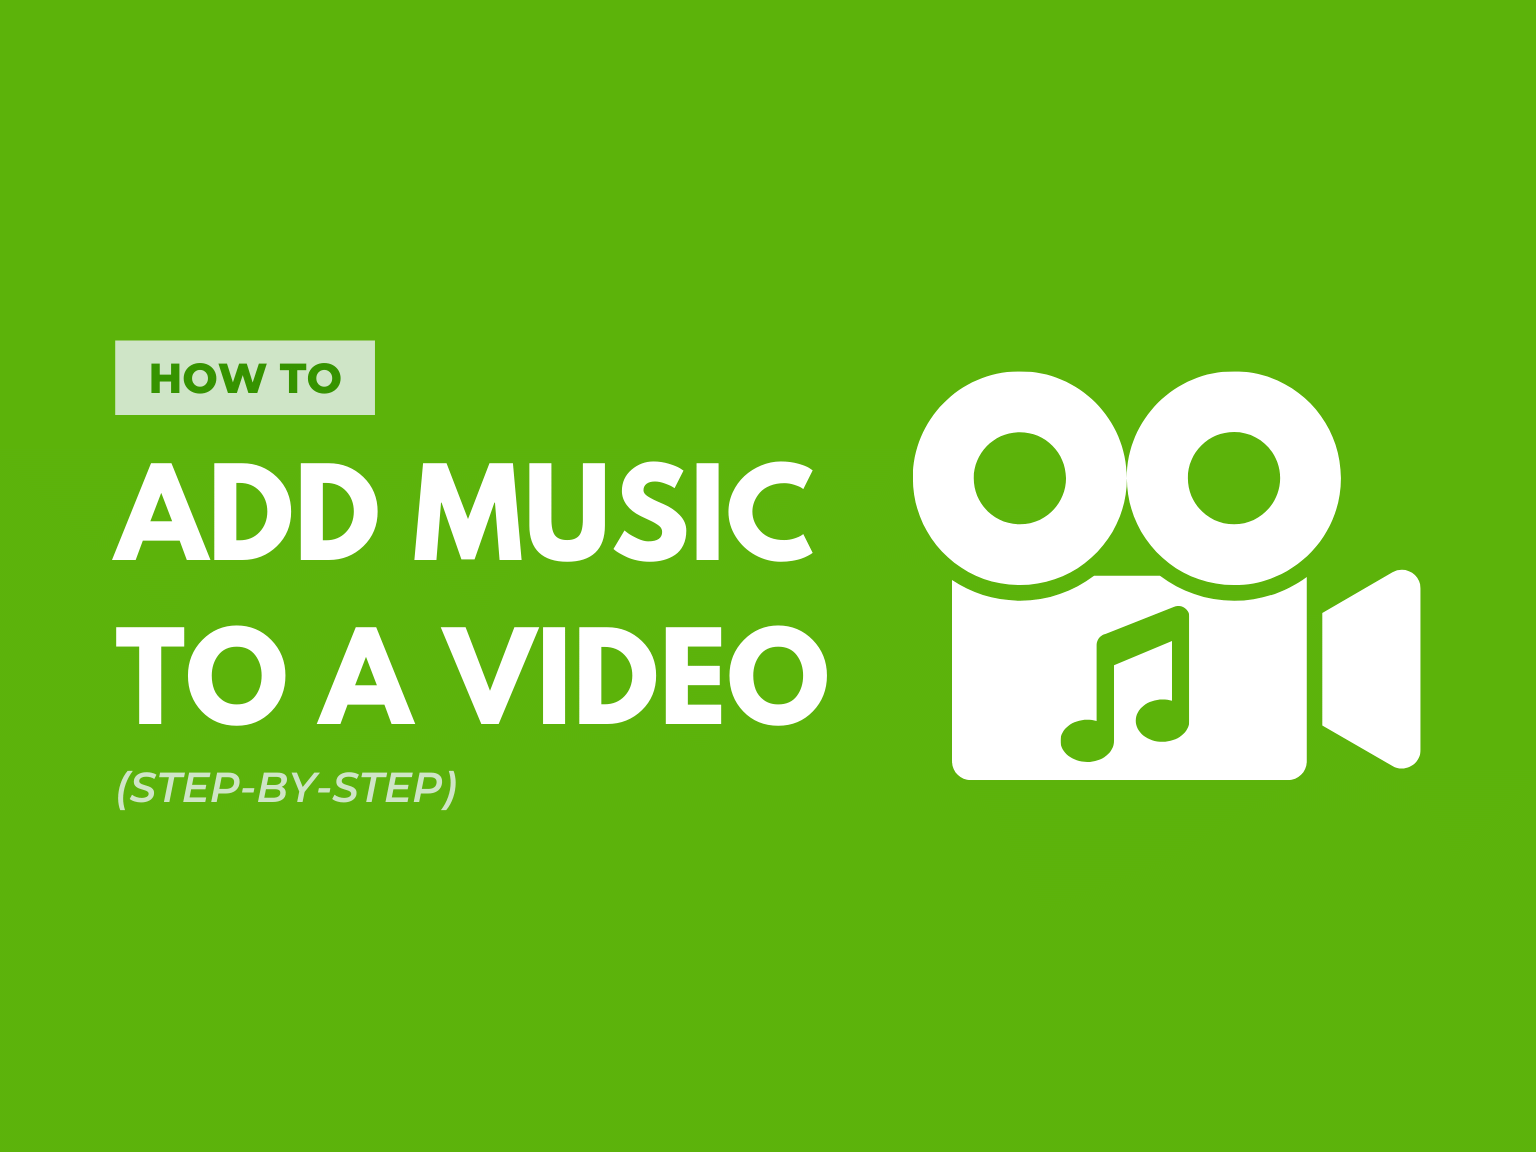 Từ giờ, bạn không cần phải là chuyên gia để thêm nhạc vào video của mình. Với hướng dẫn bước bởi bước, bạn có thể dễ dàng vượt qua mọi điều kiện để tạo ra những video thú vị và tinh tế hơn bao giờ hết. Đừng bỏ lỡ hình ảnh dưới đây để khám phá cách thêm nhạc vào video một cách dễ dàng và nhanh chóng!